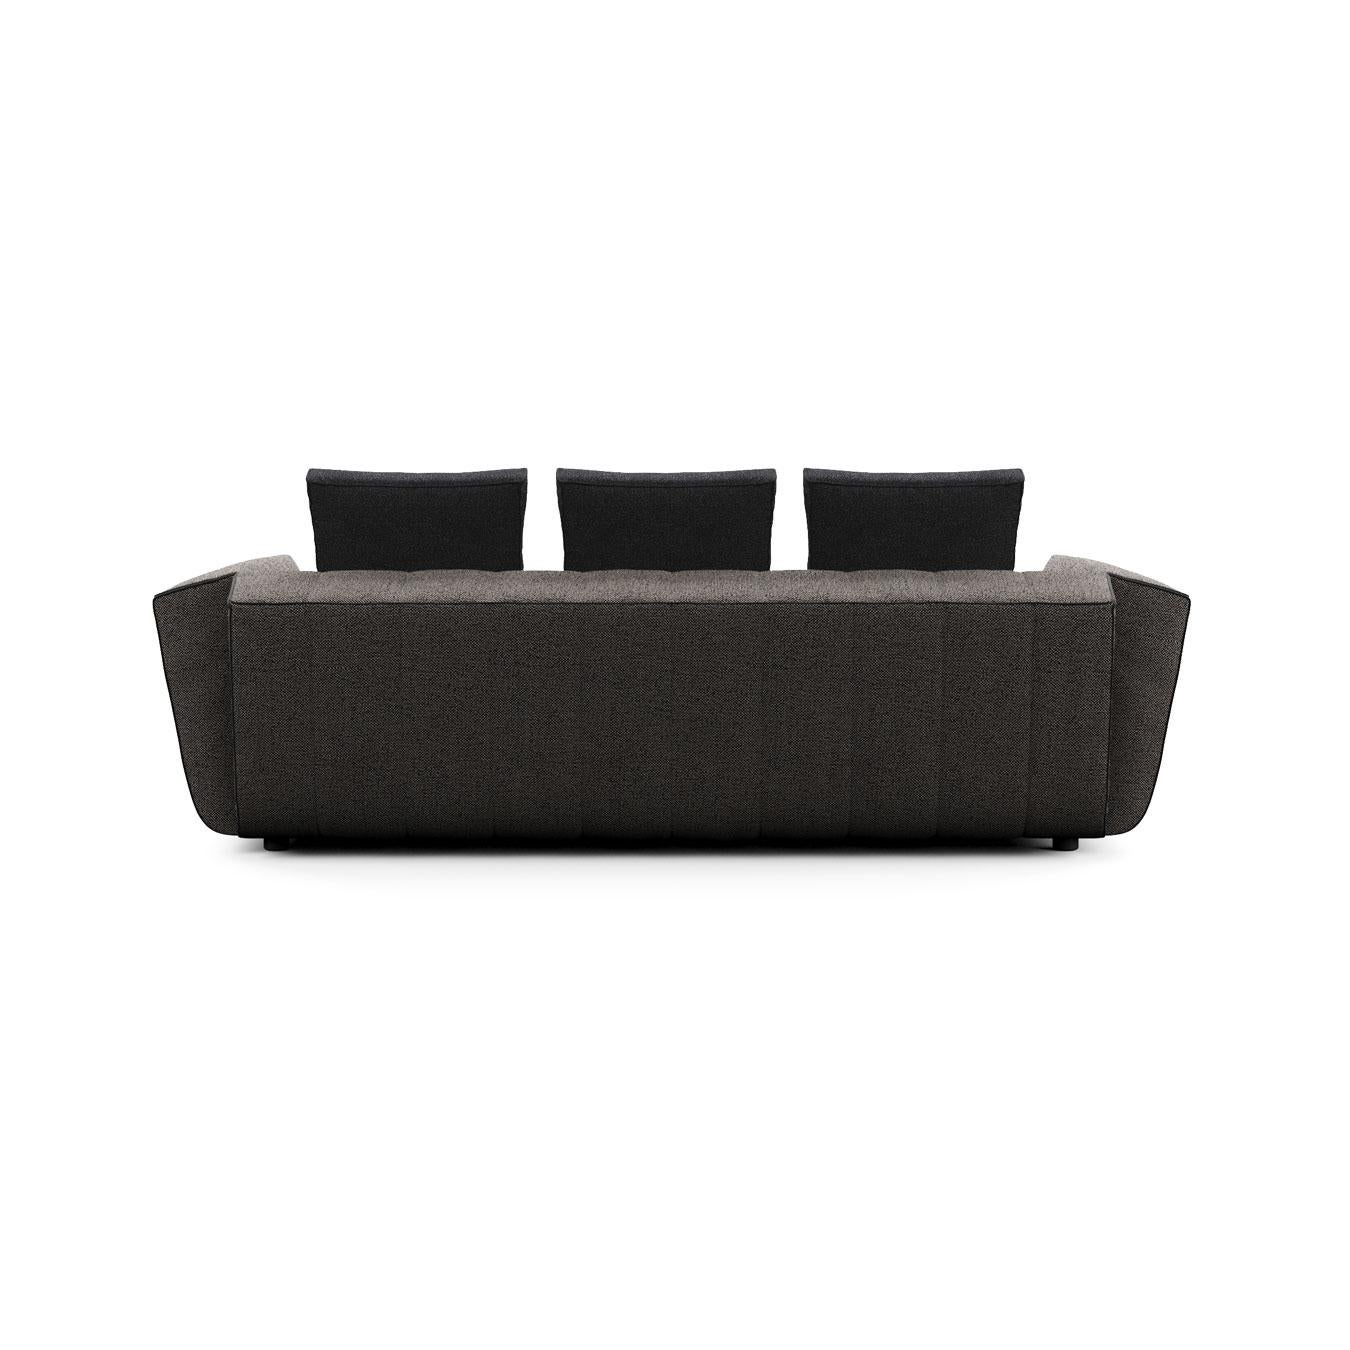 Dolcevita Sofa In New Condition For Sale In Bertinoro, IT